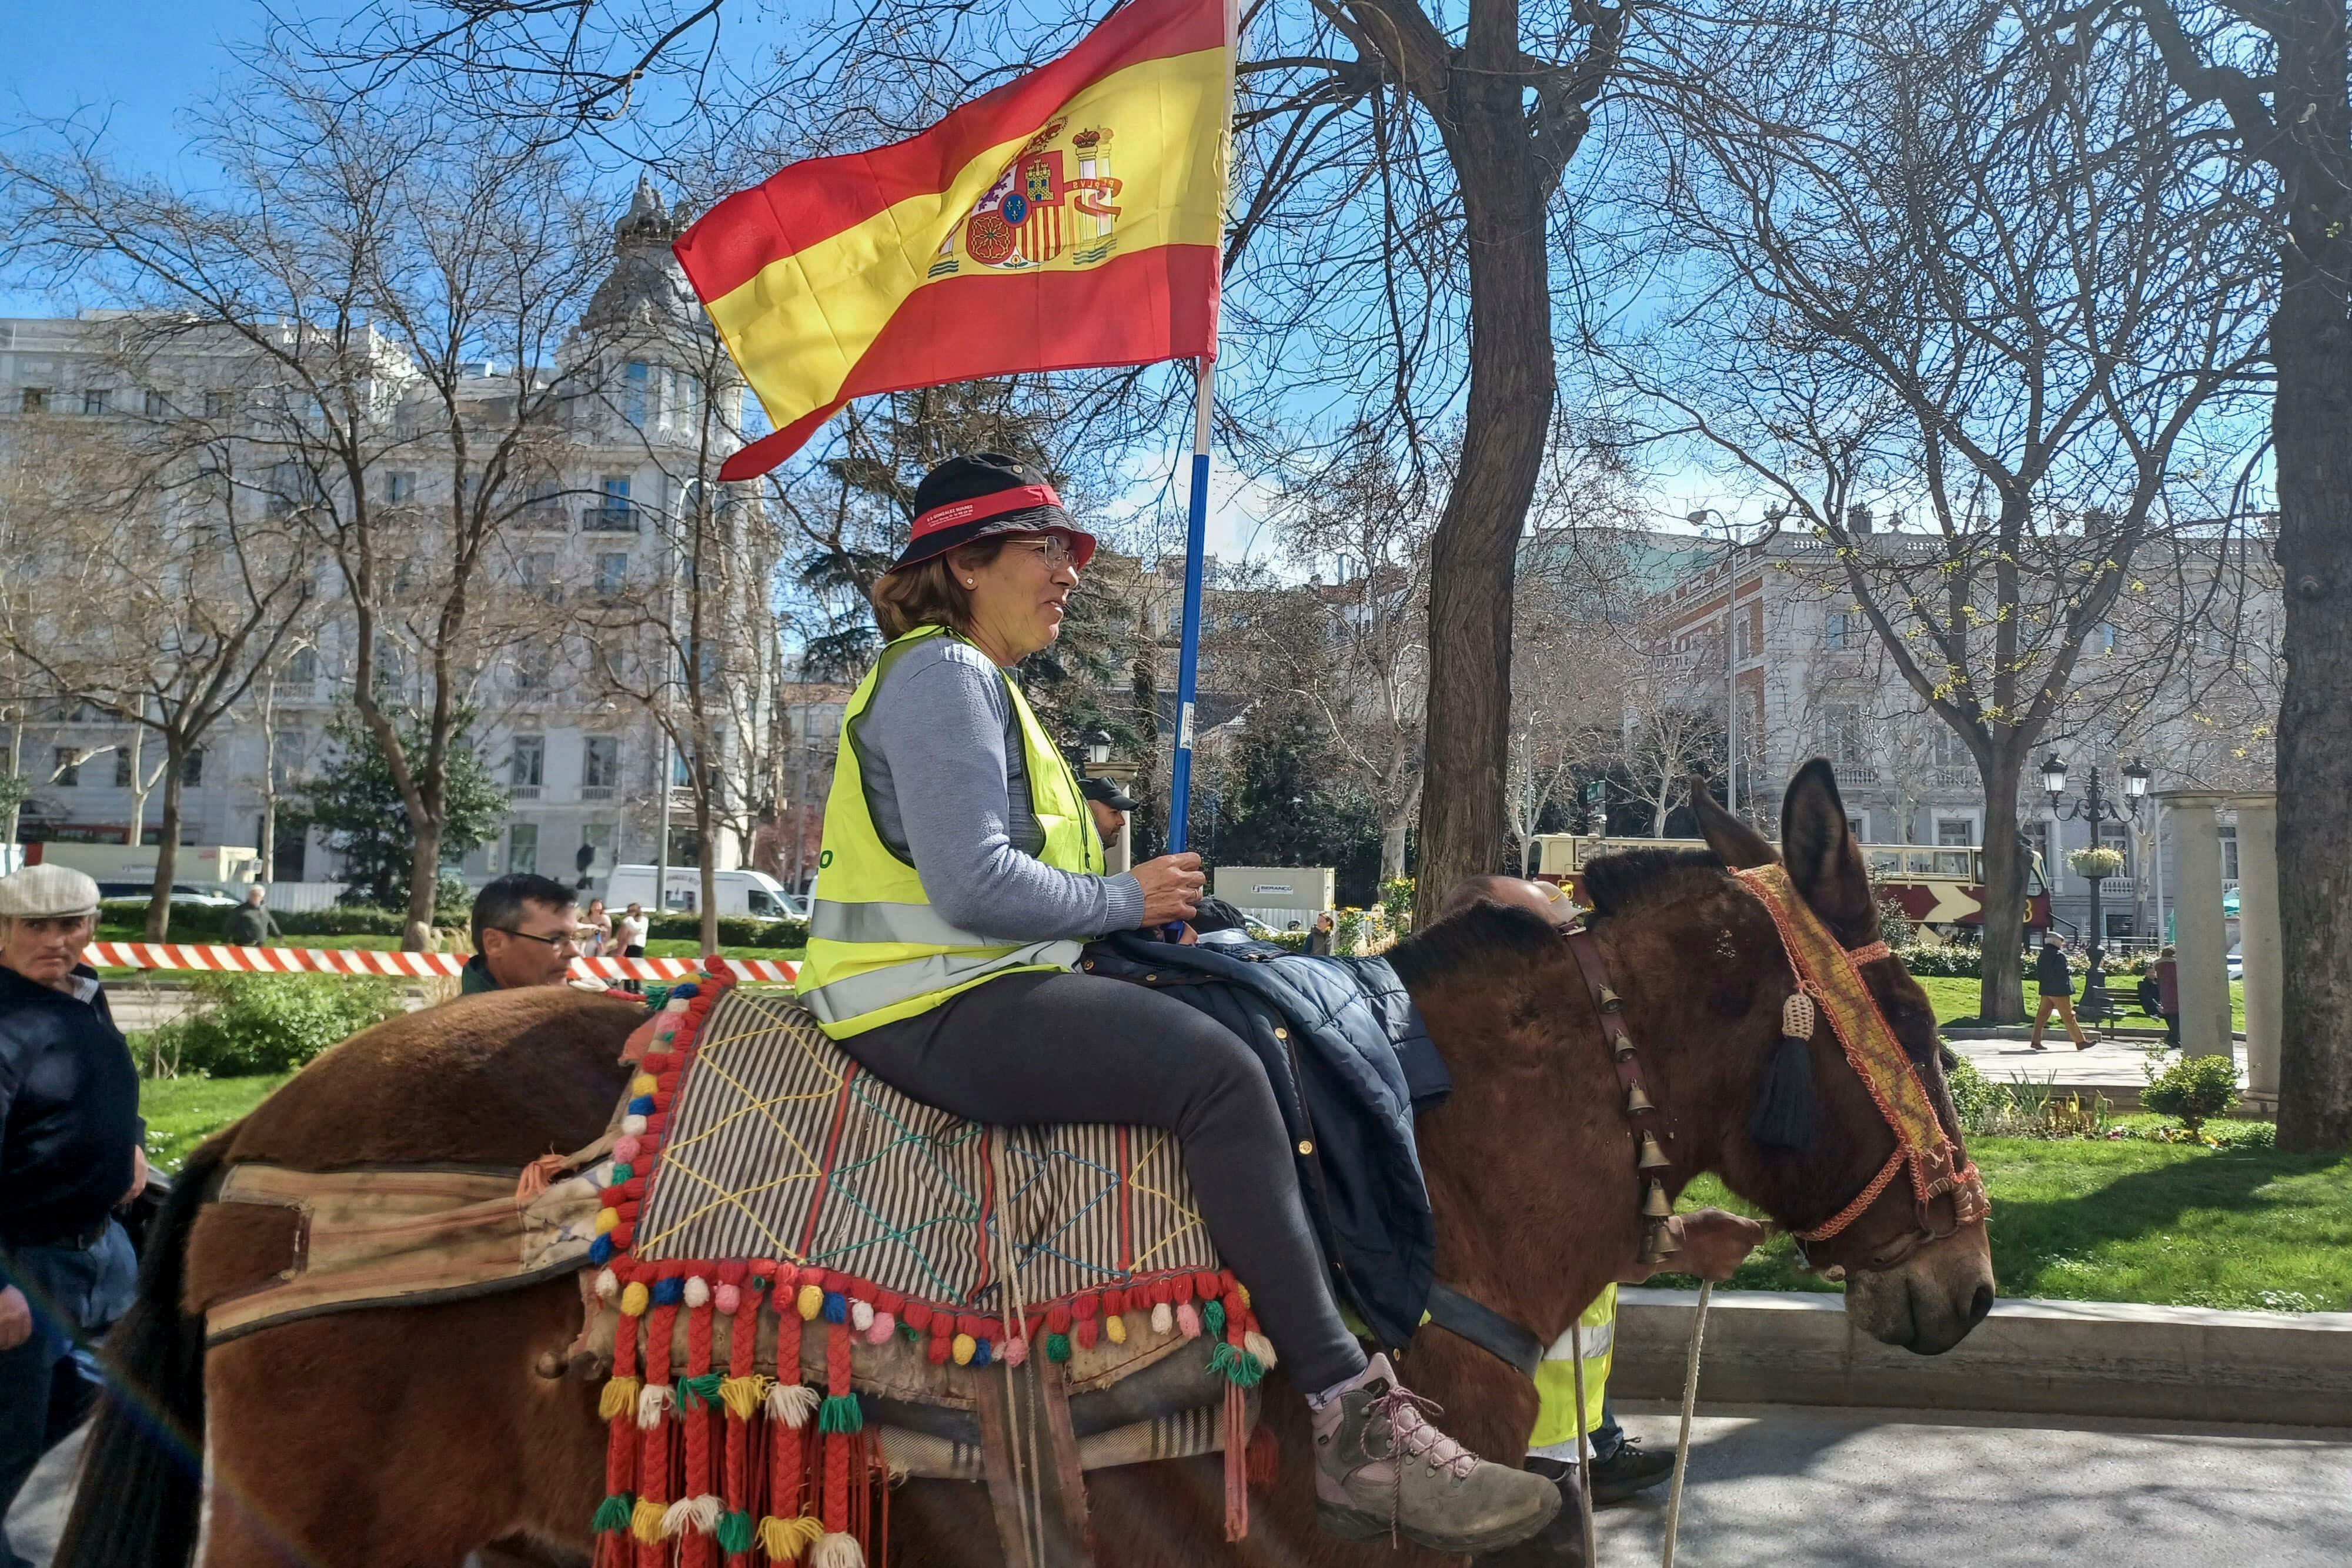  Una agricultora en su montura participa en una manifestación de agricultores este miércoles, en Madrid